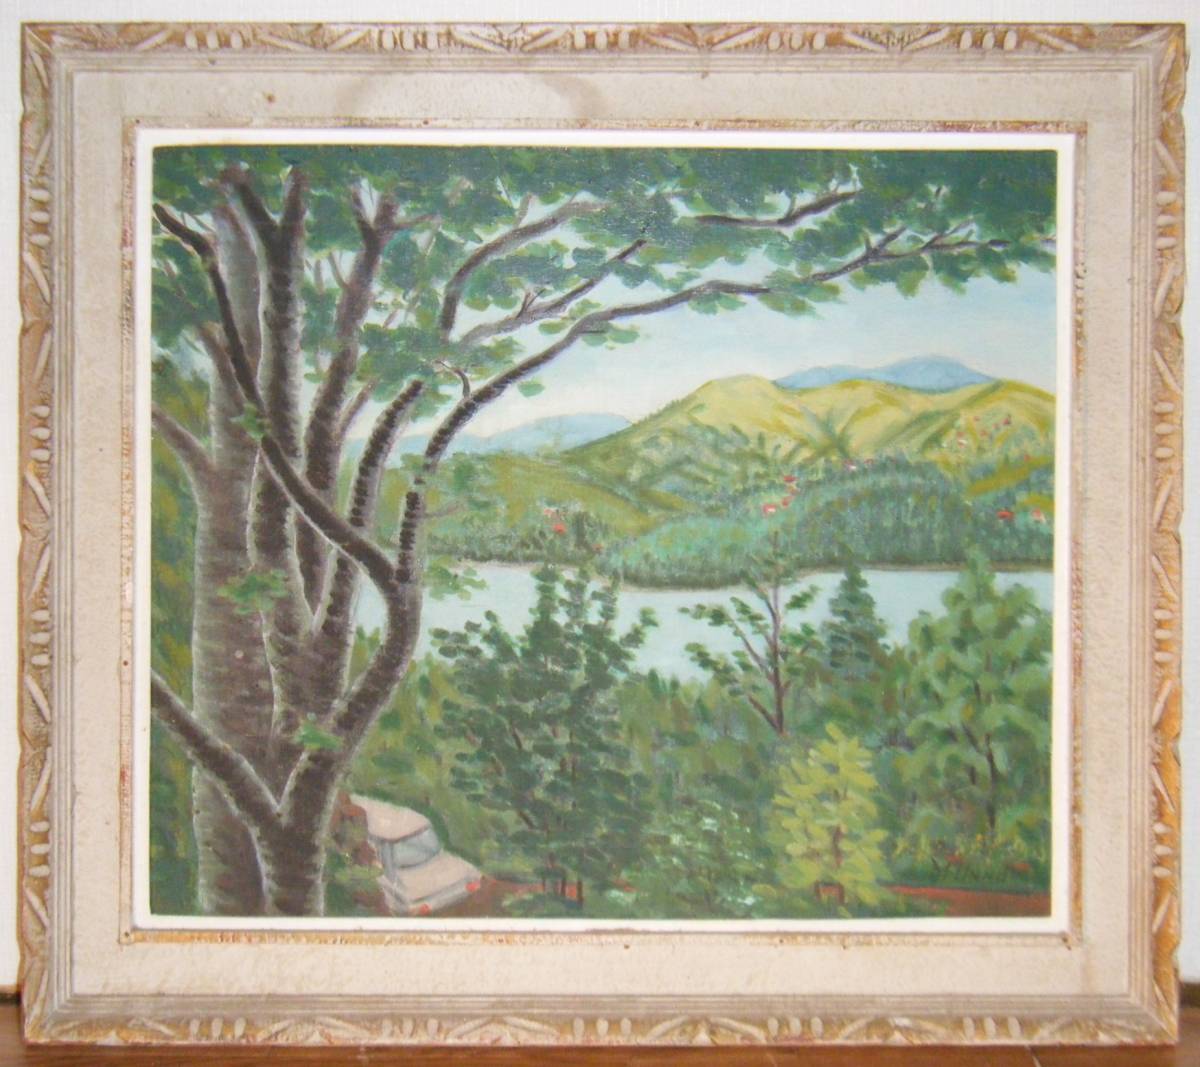 Pintura M.UNNO Pintura al óleo No. 10 Obra maestra del lago Yamanaka P52, Cuadro, Pintura al óleo, Naturaleza, Pintura de paisaje